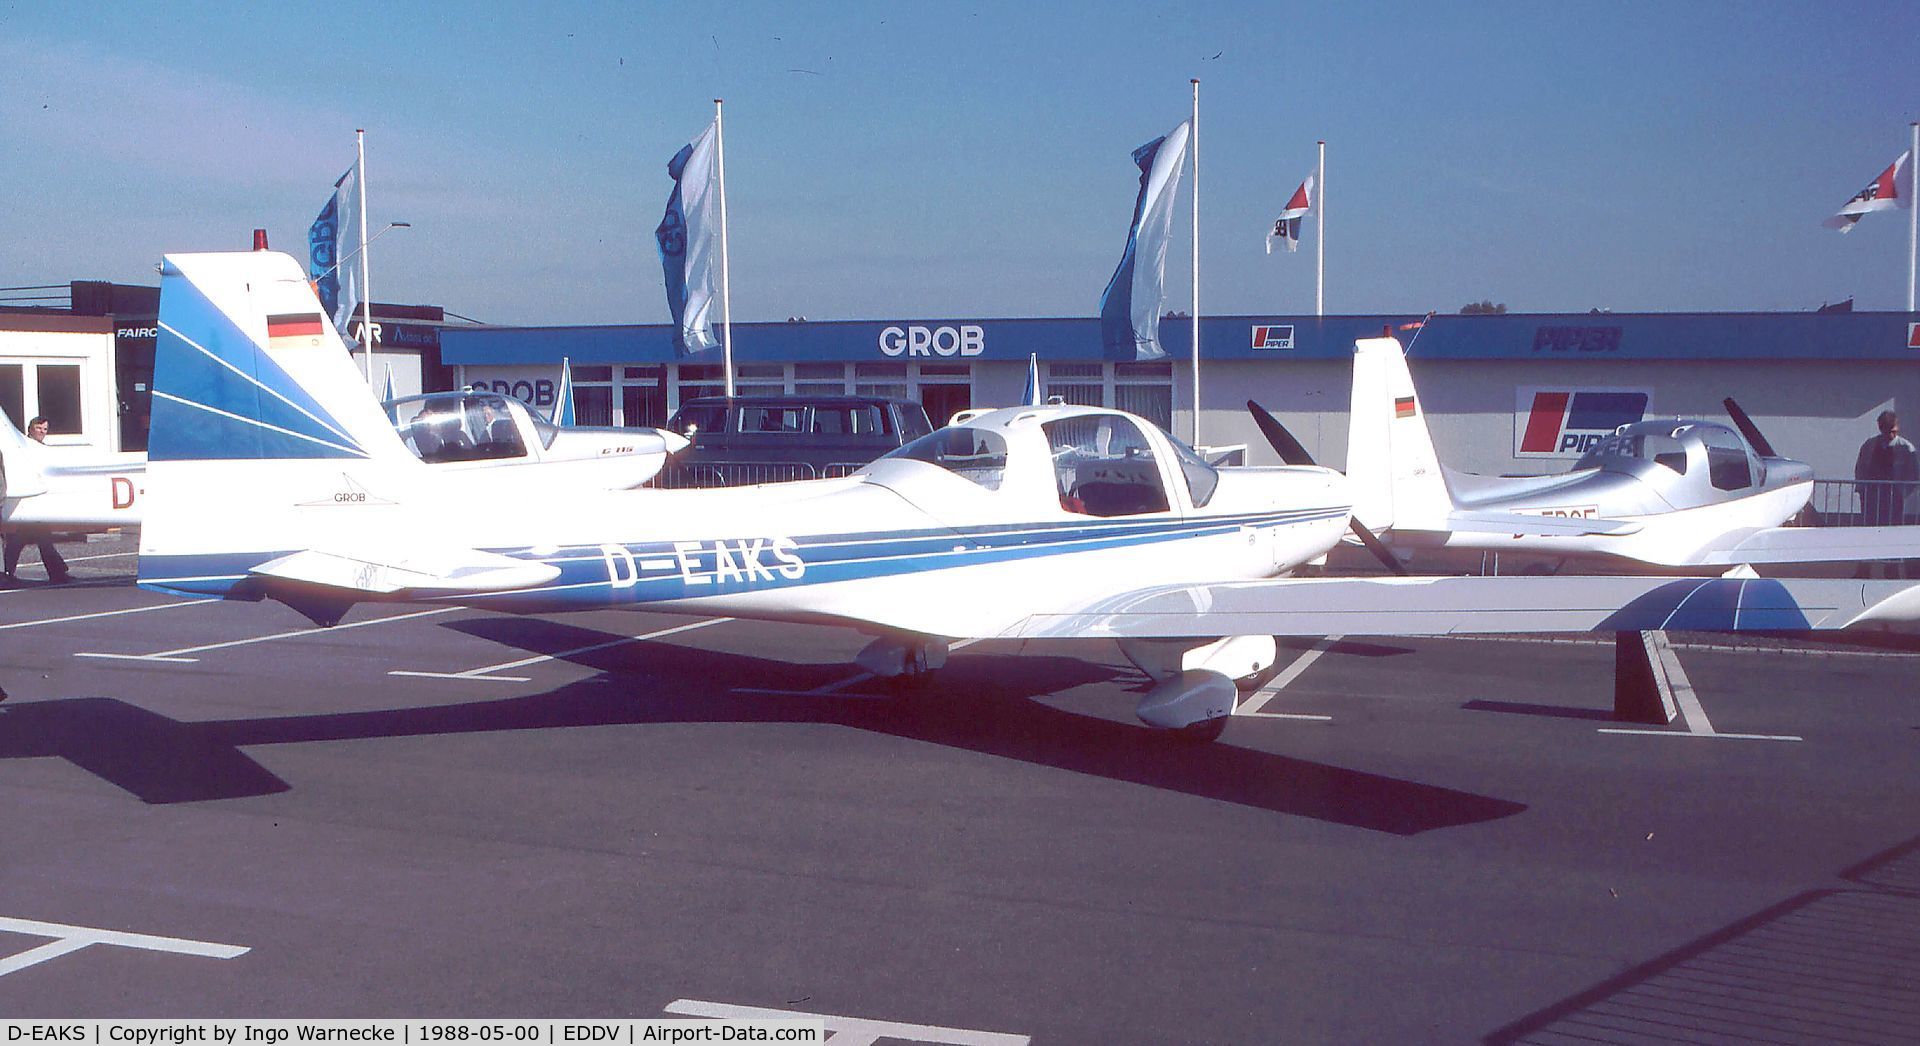 D-EAKS, 1988 Grob G-115A C/N 8042, Grob G.115A at the ILA 1988, Hannover